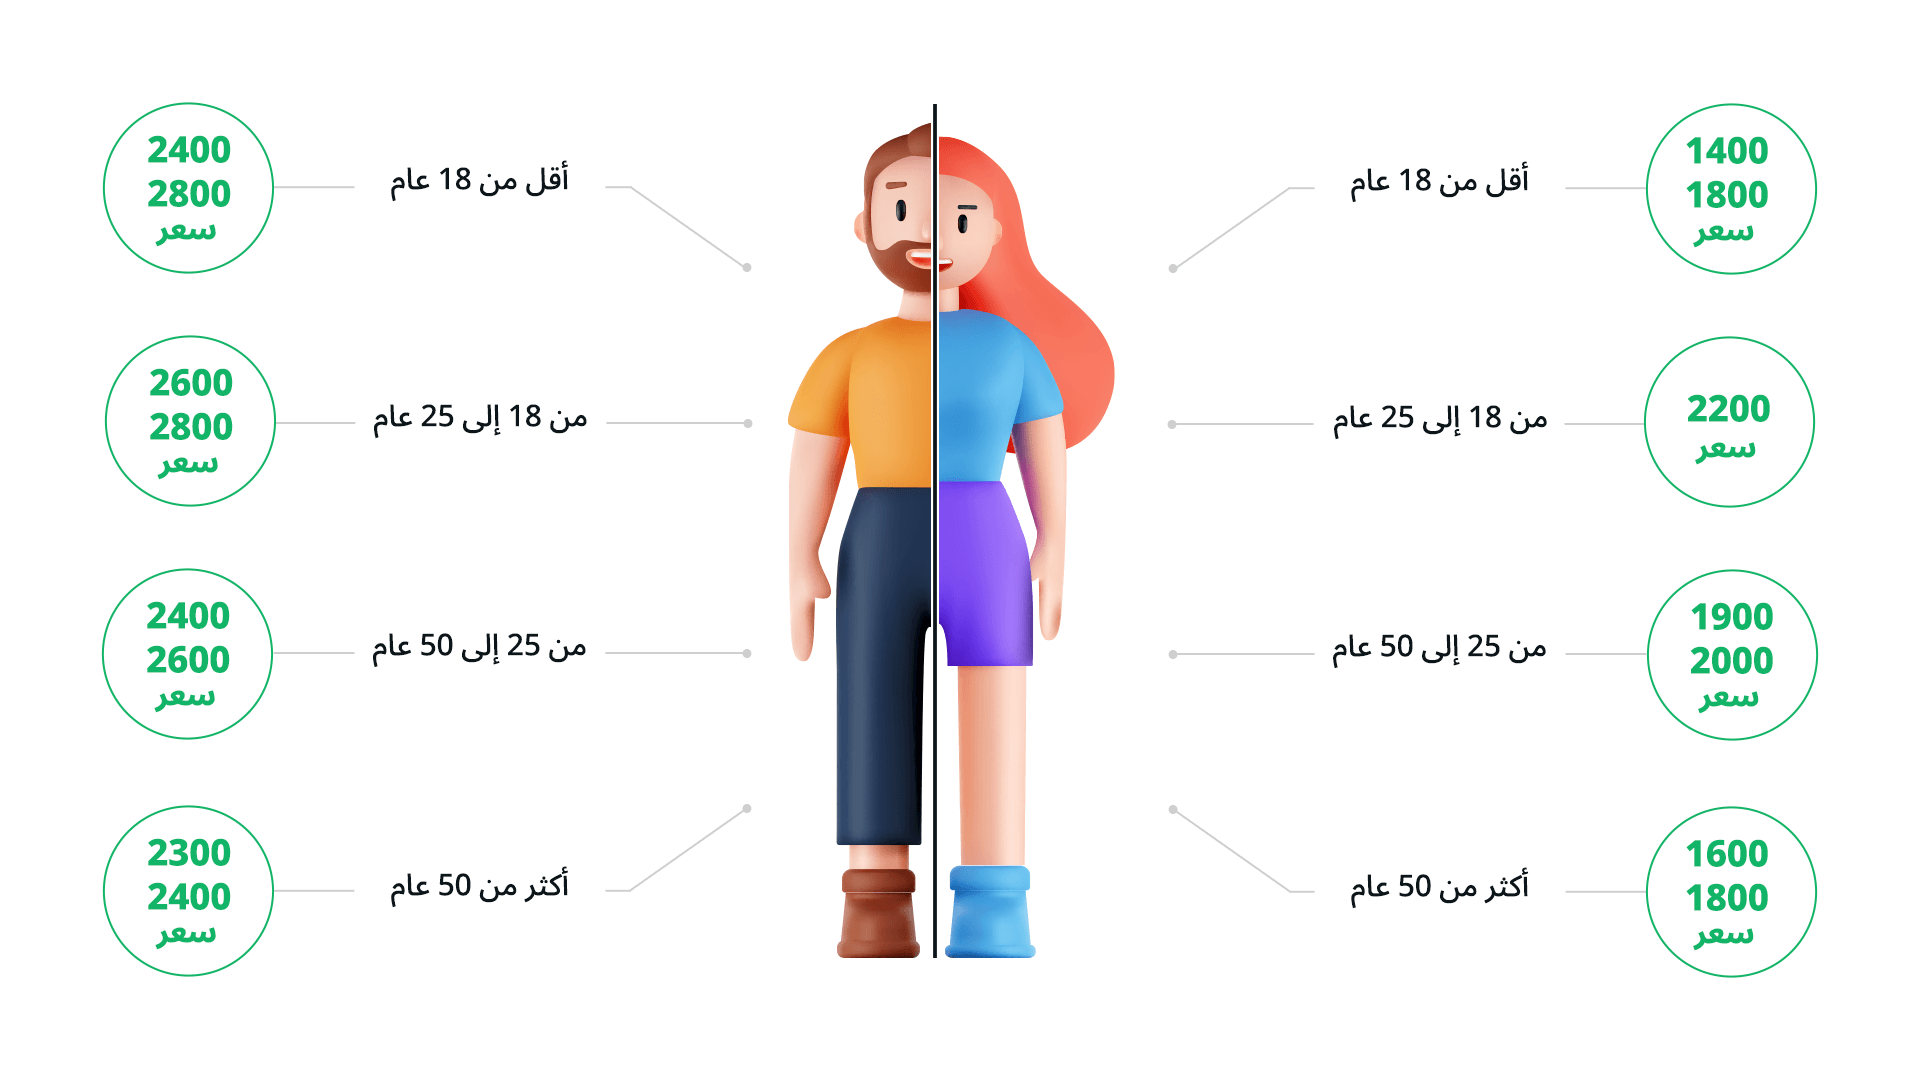 انفوجراف لاحتياجات الجسم اليومية من السعرات الحرارية للأعمار المختلفة. يظهر في مركز الصورة ثري دي لشخص نصفه ذكر ونصفه أنثى وتتوزع قيم السعرات الحرارية حول الرسم للأعمار من أقل من 18 عام وحتى 50 عام أو أكثر. 